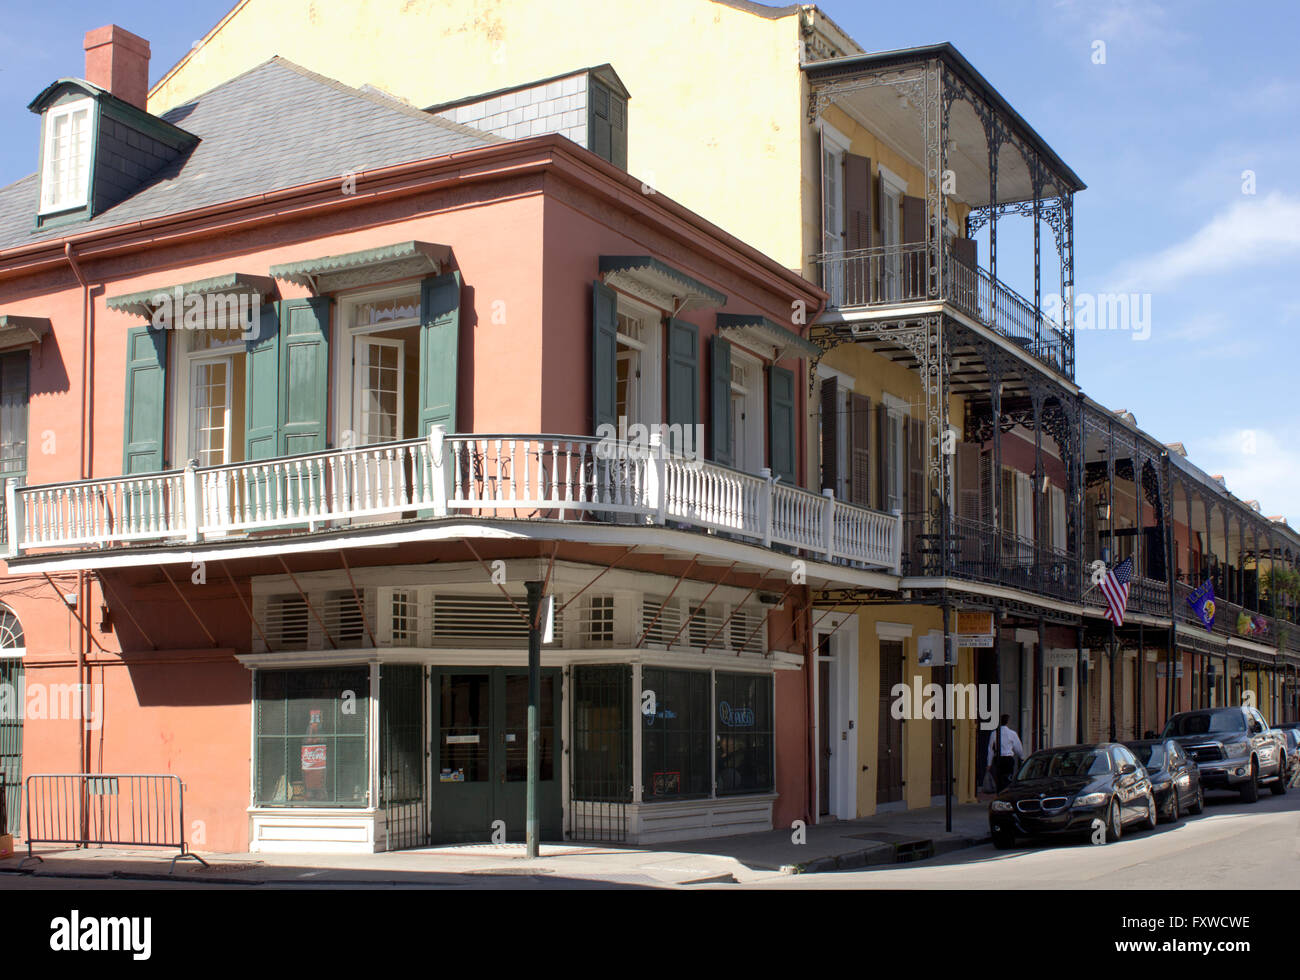 Typische Straße Ecke im New Orleans French Quarter mit Hurrikan Fensterläden und eisernen Balkonen auf Gebäuden aus dem 19. Jahrhundert. Stockfoto